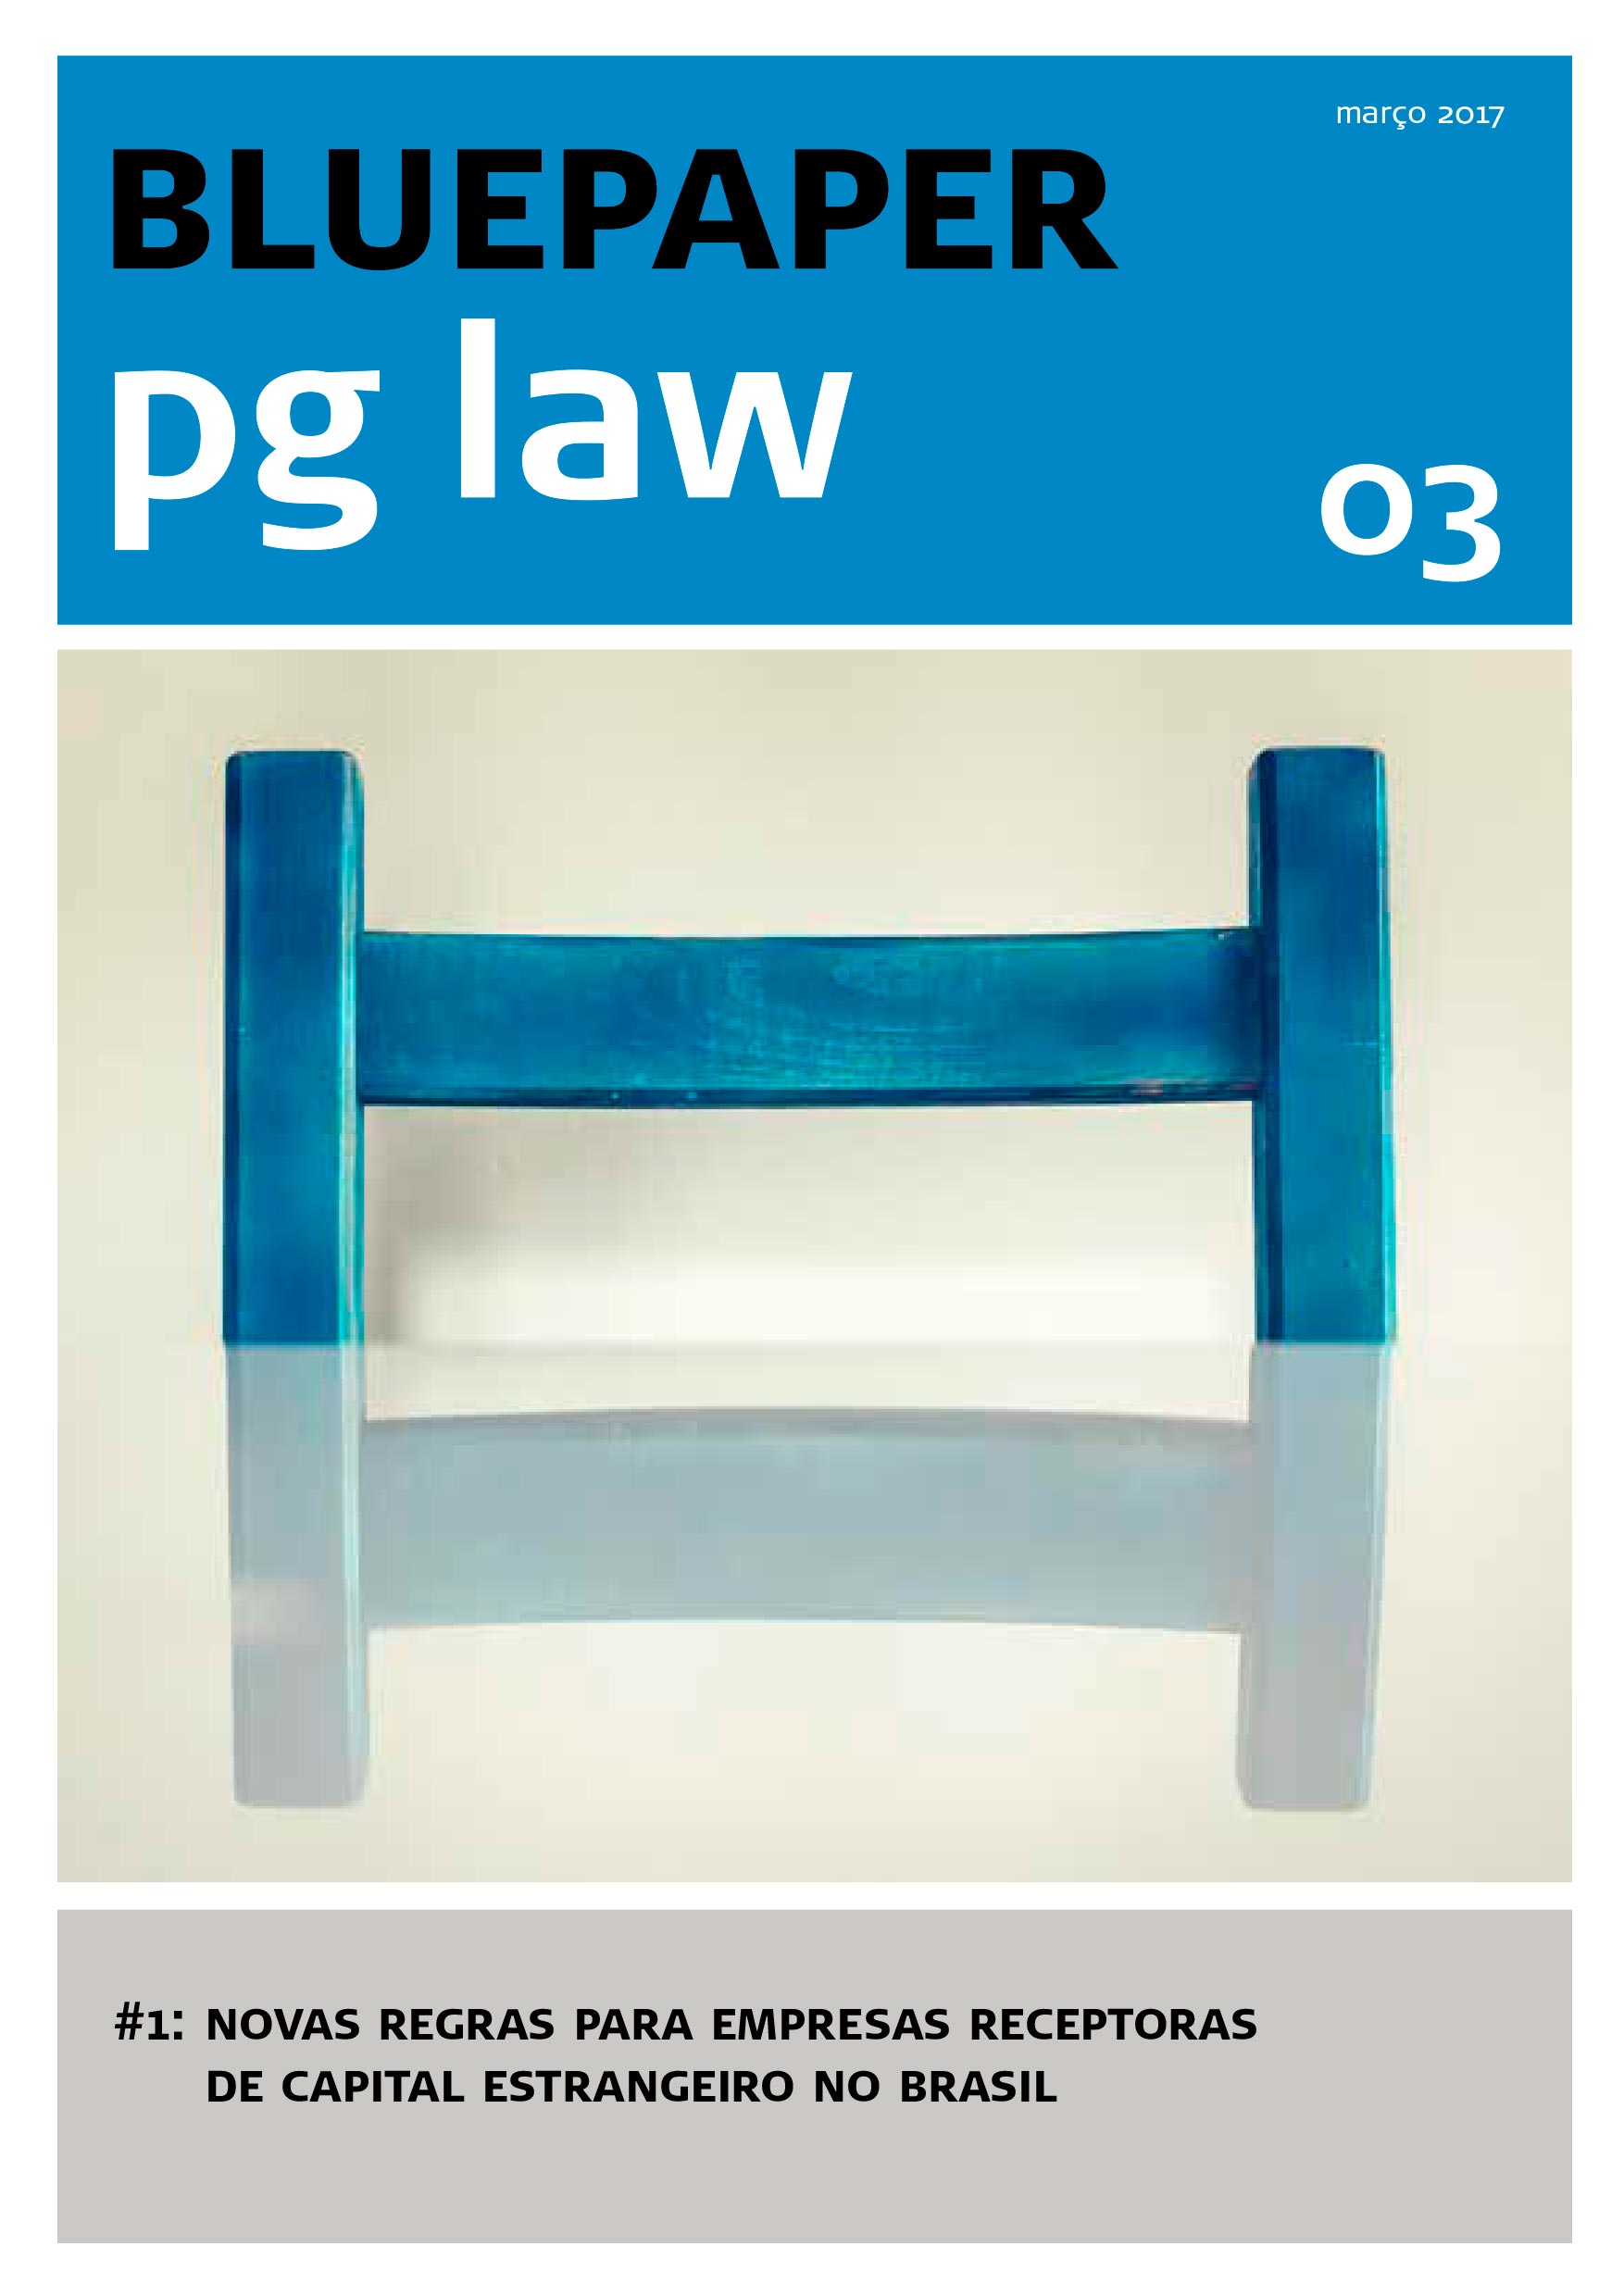 03-bluepaper-pglaw_pt